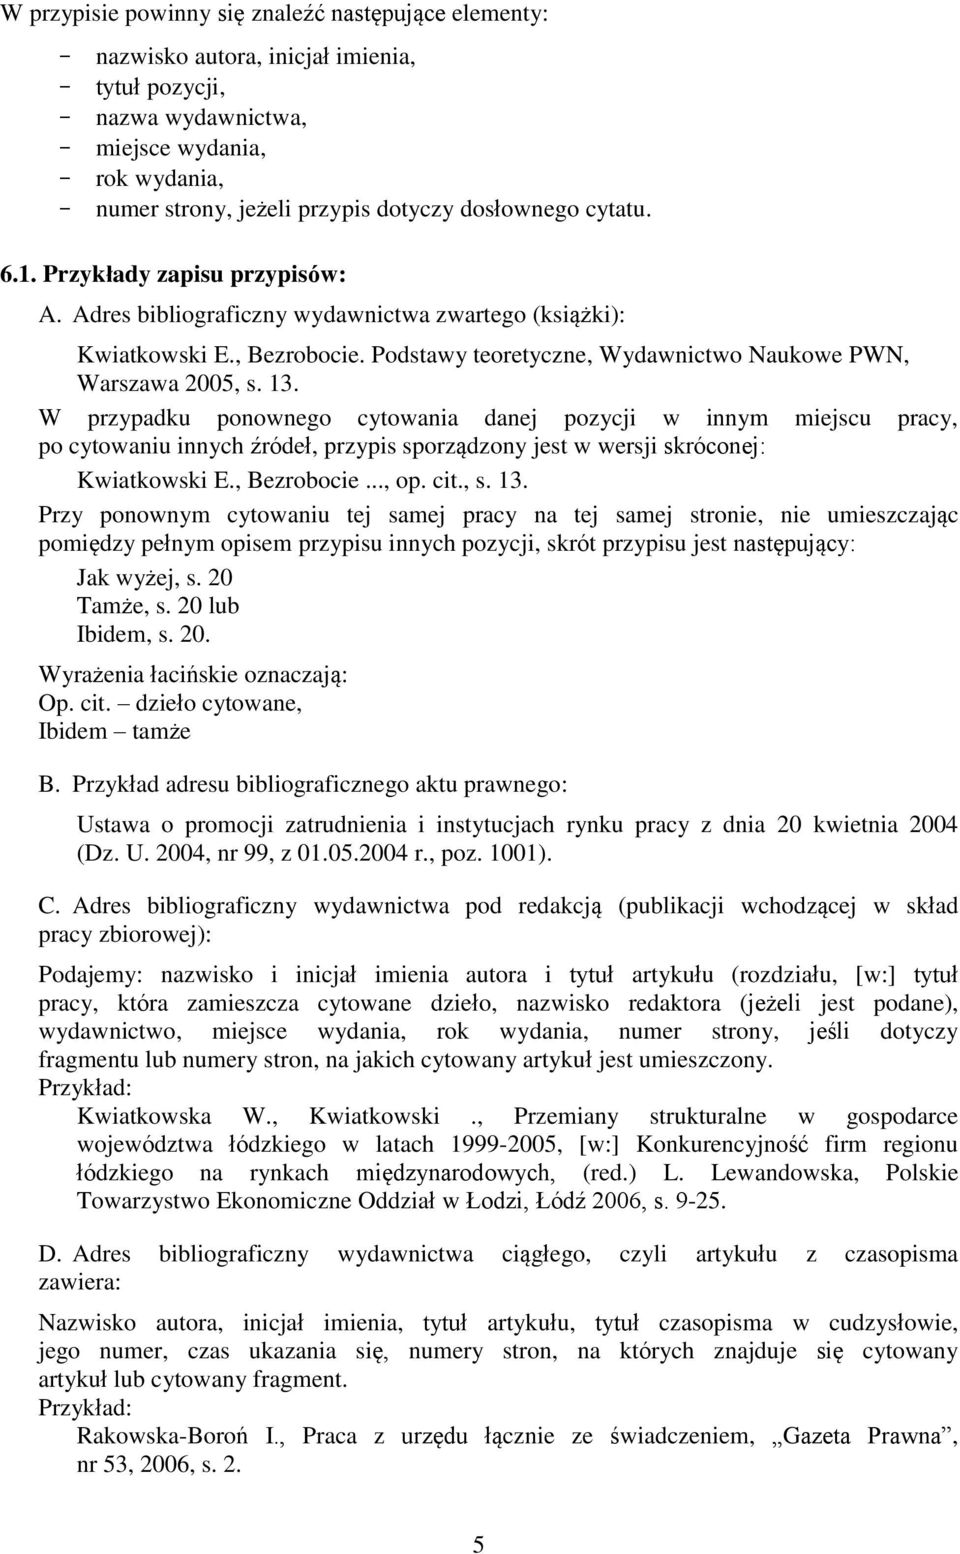 Podstawy teoretyczne, Wydawnictwo Naukowe PWN, Warszawa 2005, s. 13.